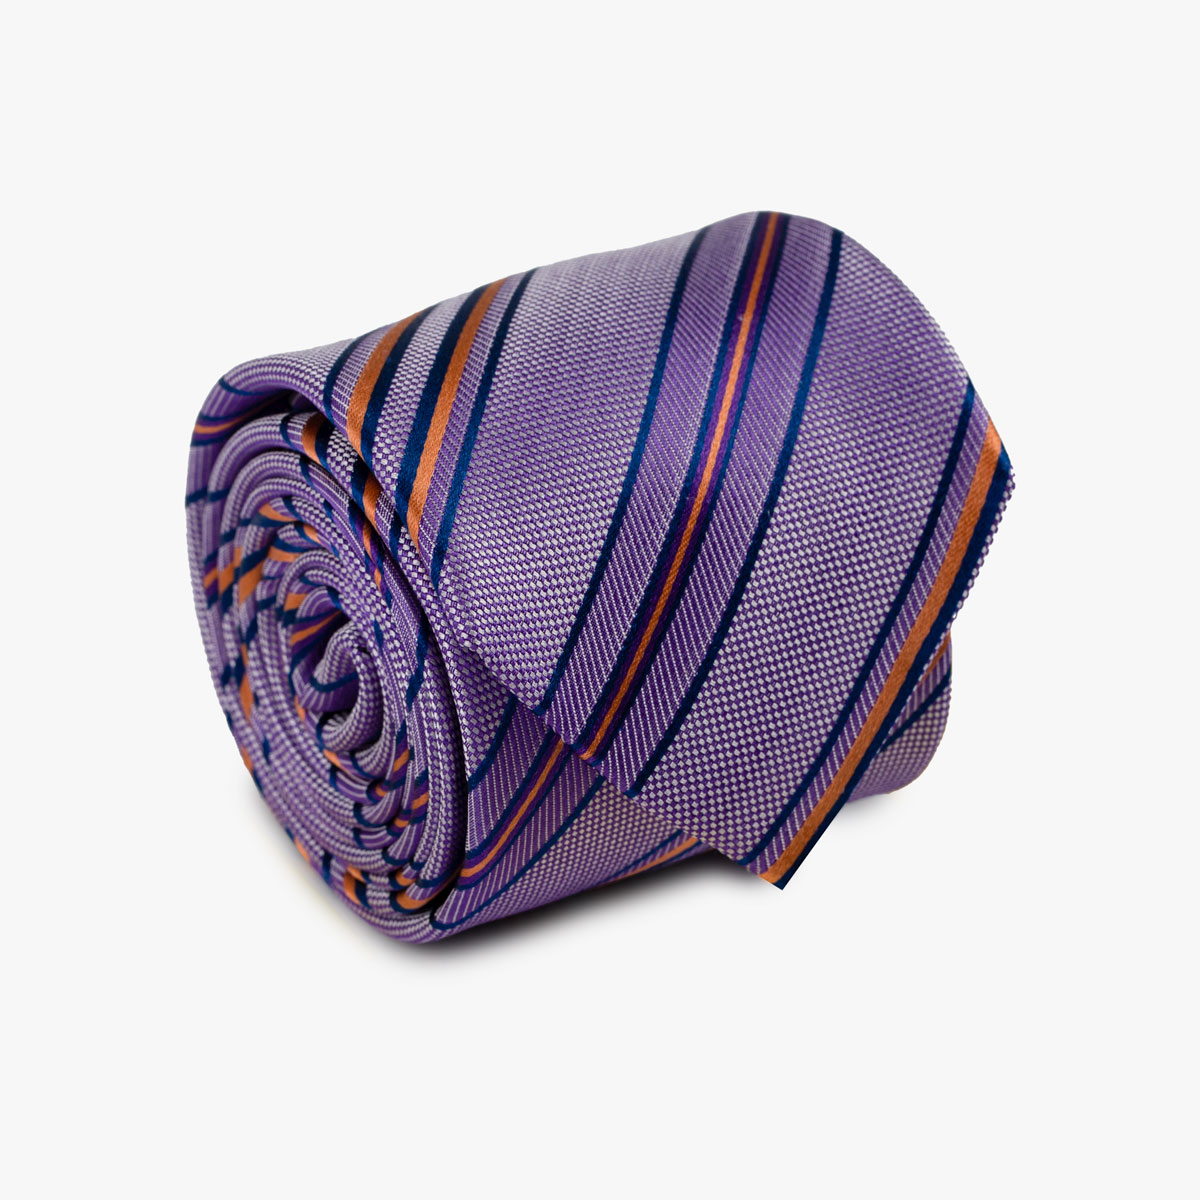 Aufgerollte Krawatte gestreift in lila